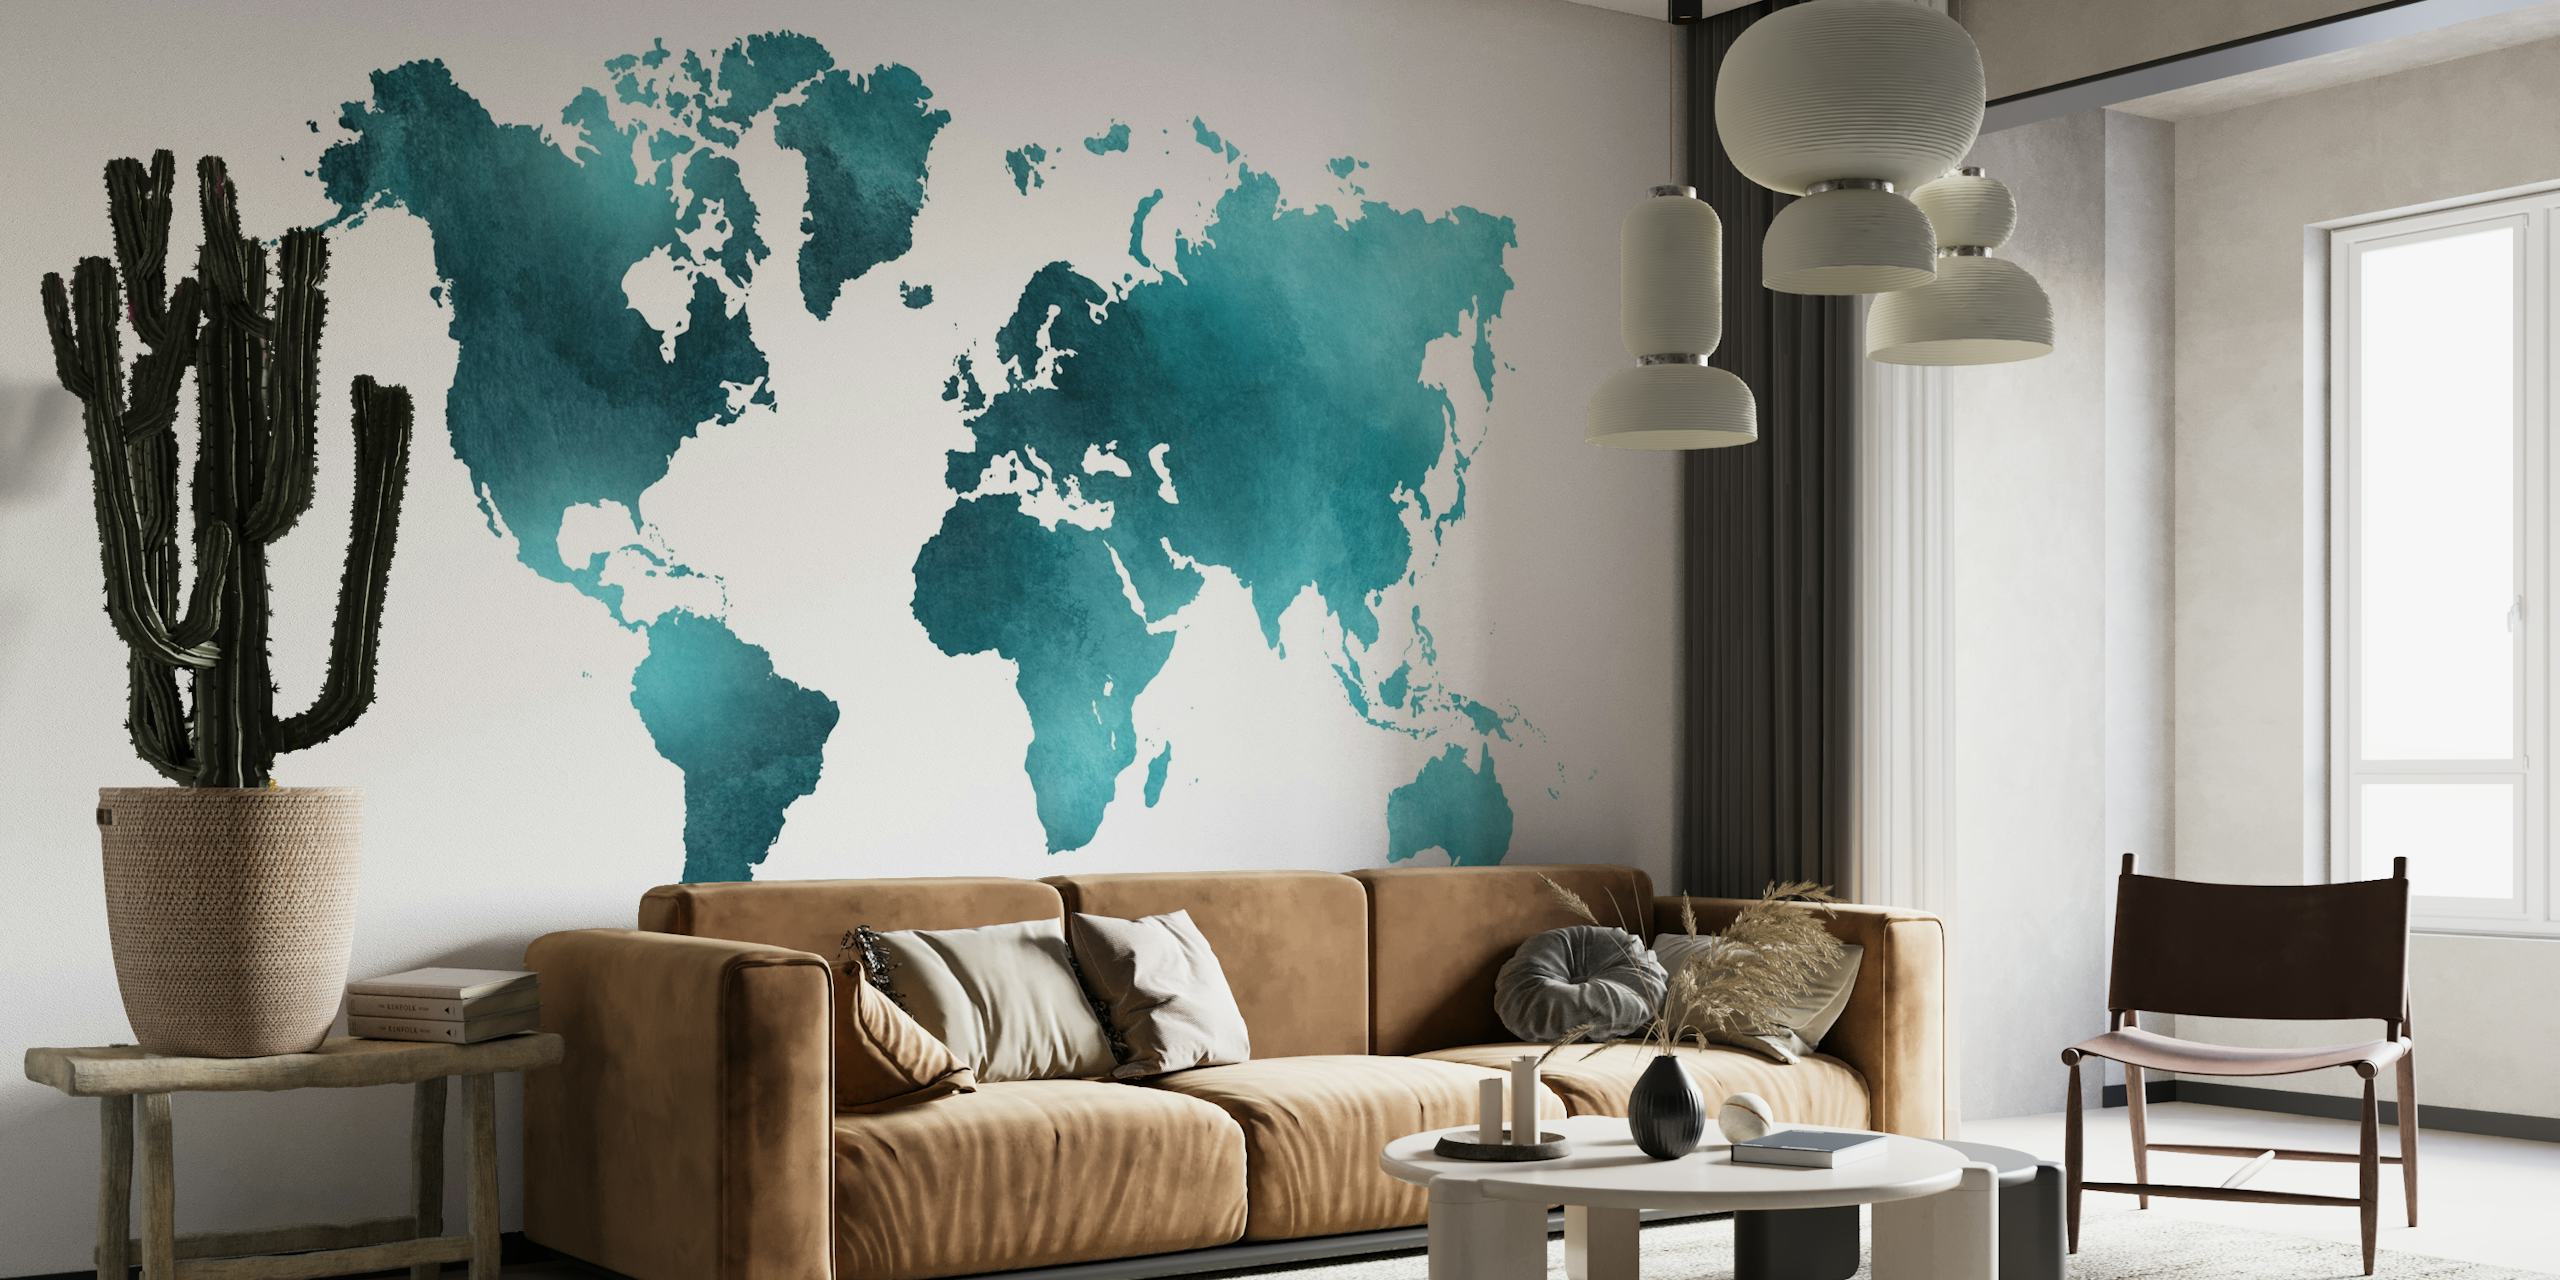 Fototapeta s mapou světa v modrozelené a tyrkysové